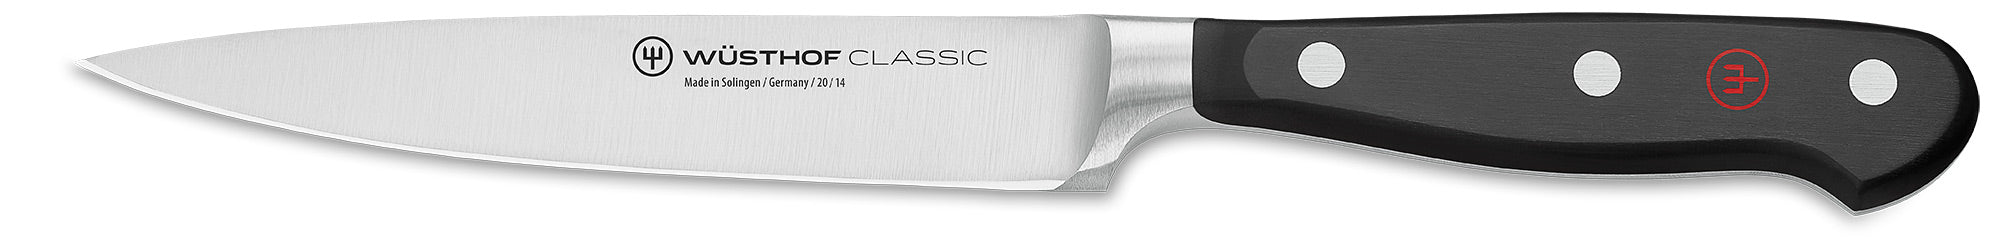 Wusthof 4522-16 utility knife canada